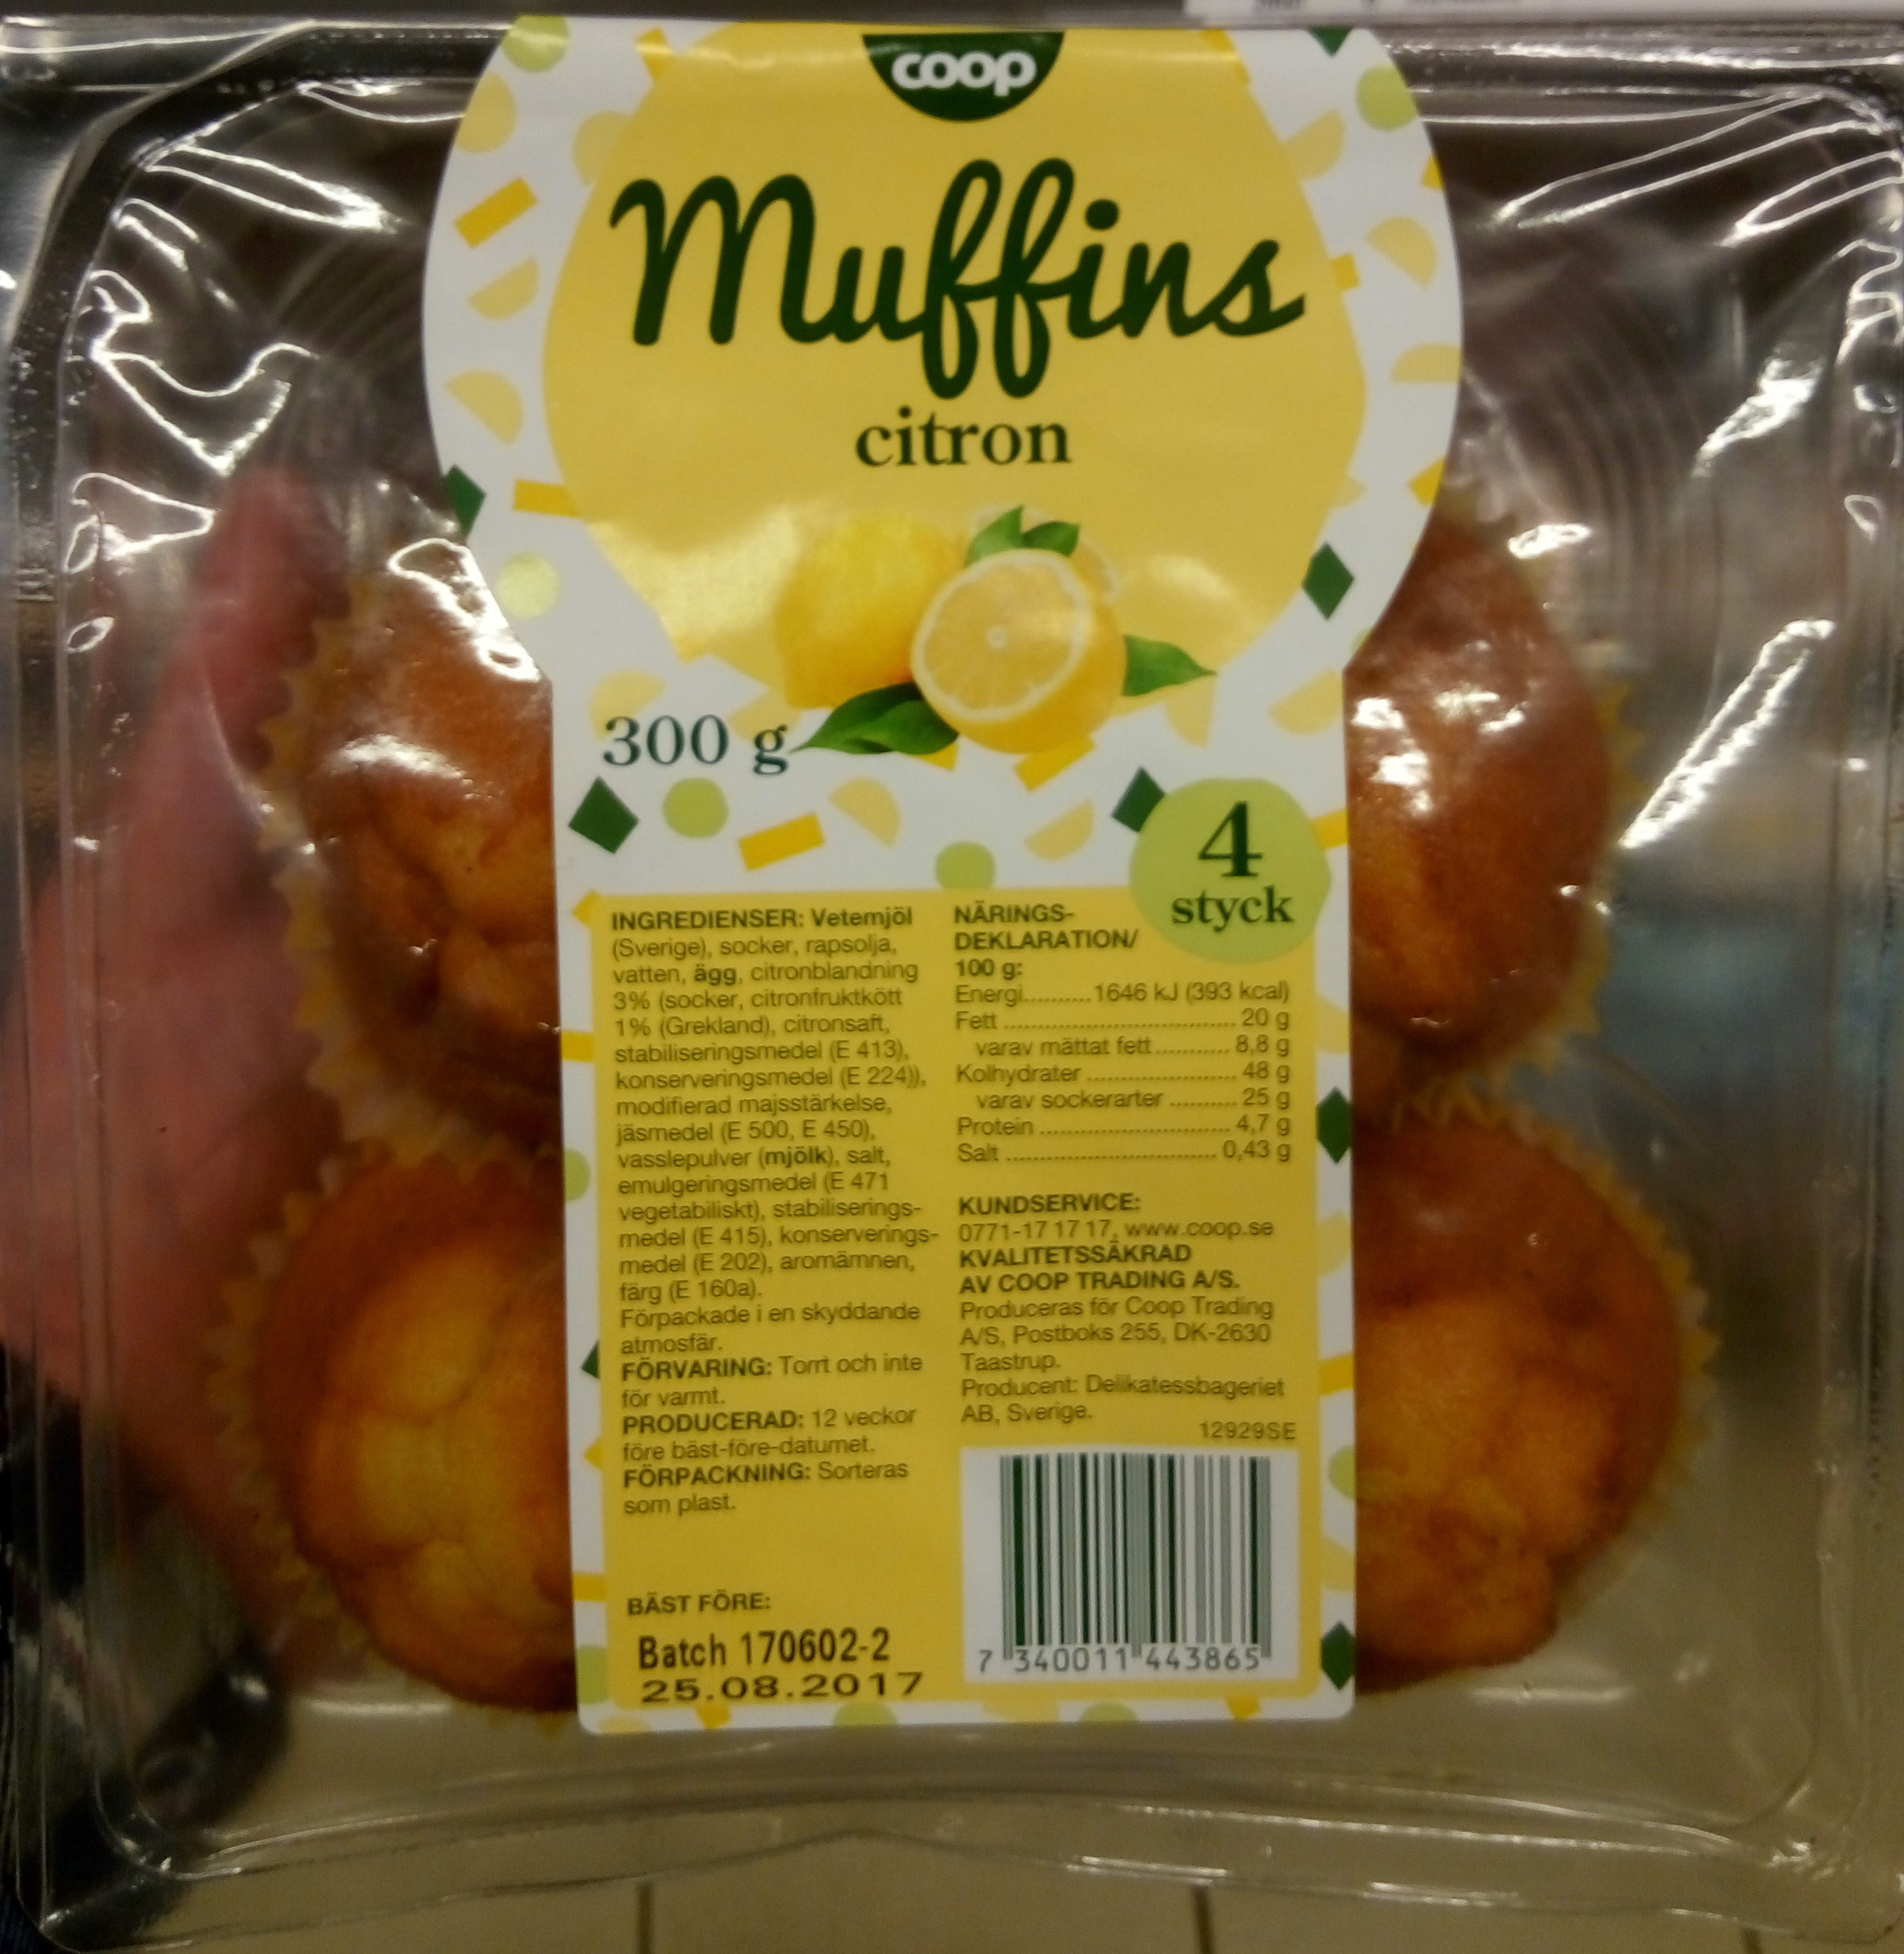 Coop Muffins citron - Produkt - sv